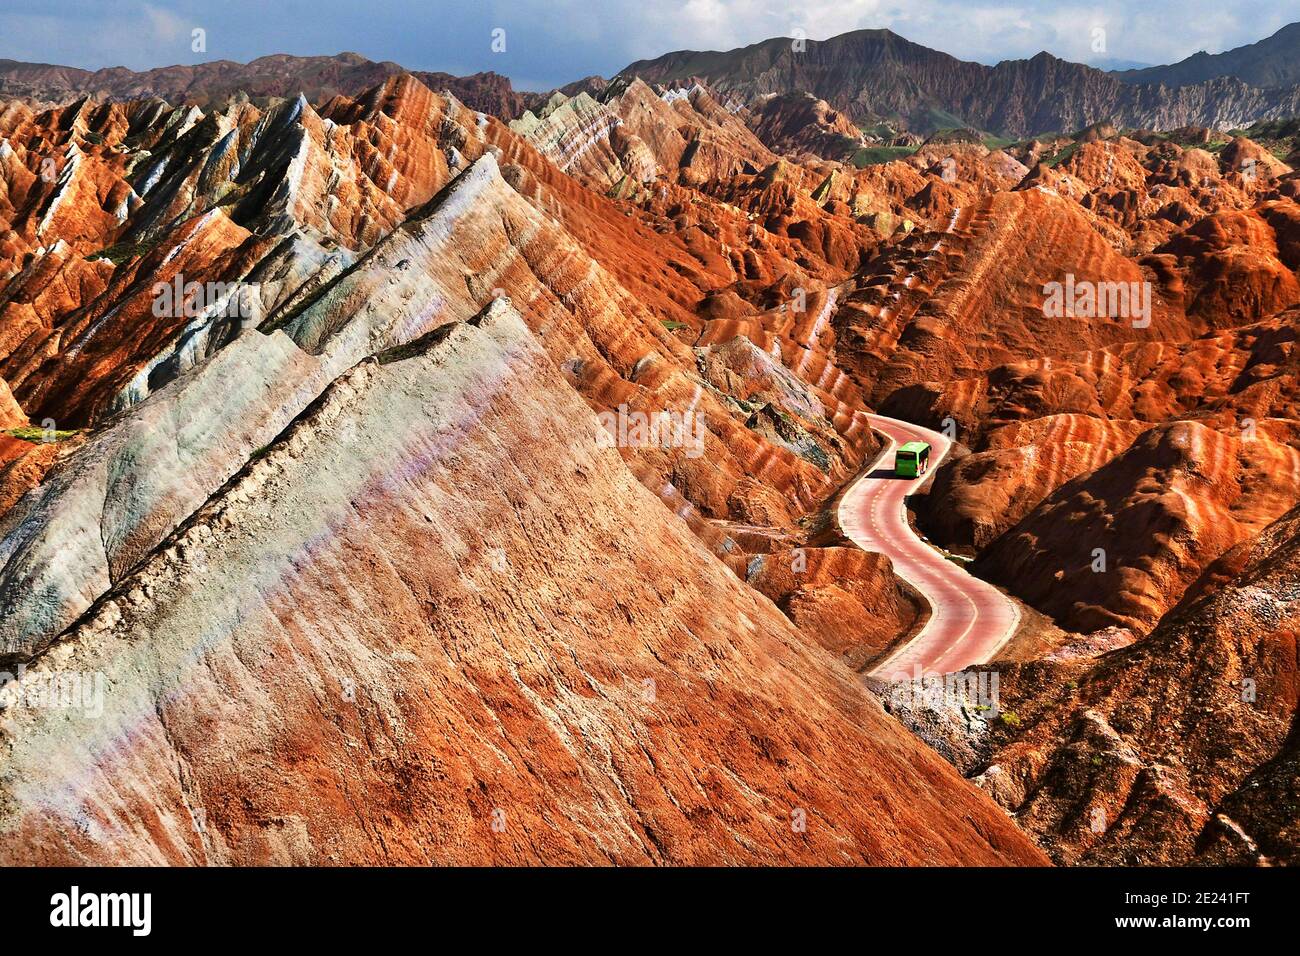 Las Montañas del Arco Iris de China dentro del Parque Geológico Zhangye Danxia son una maravilla geológica del mundo. Foto de stock